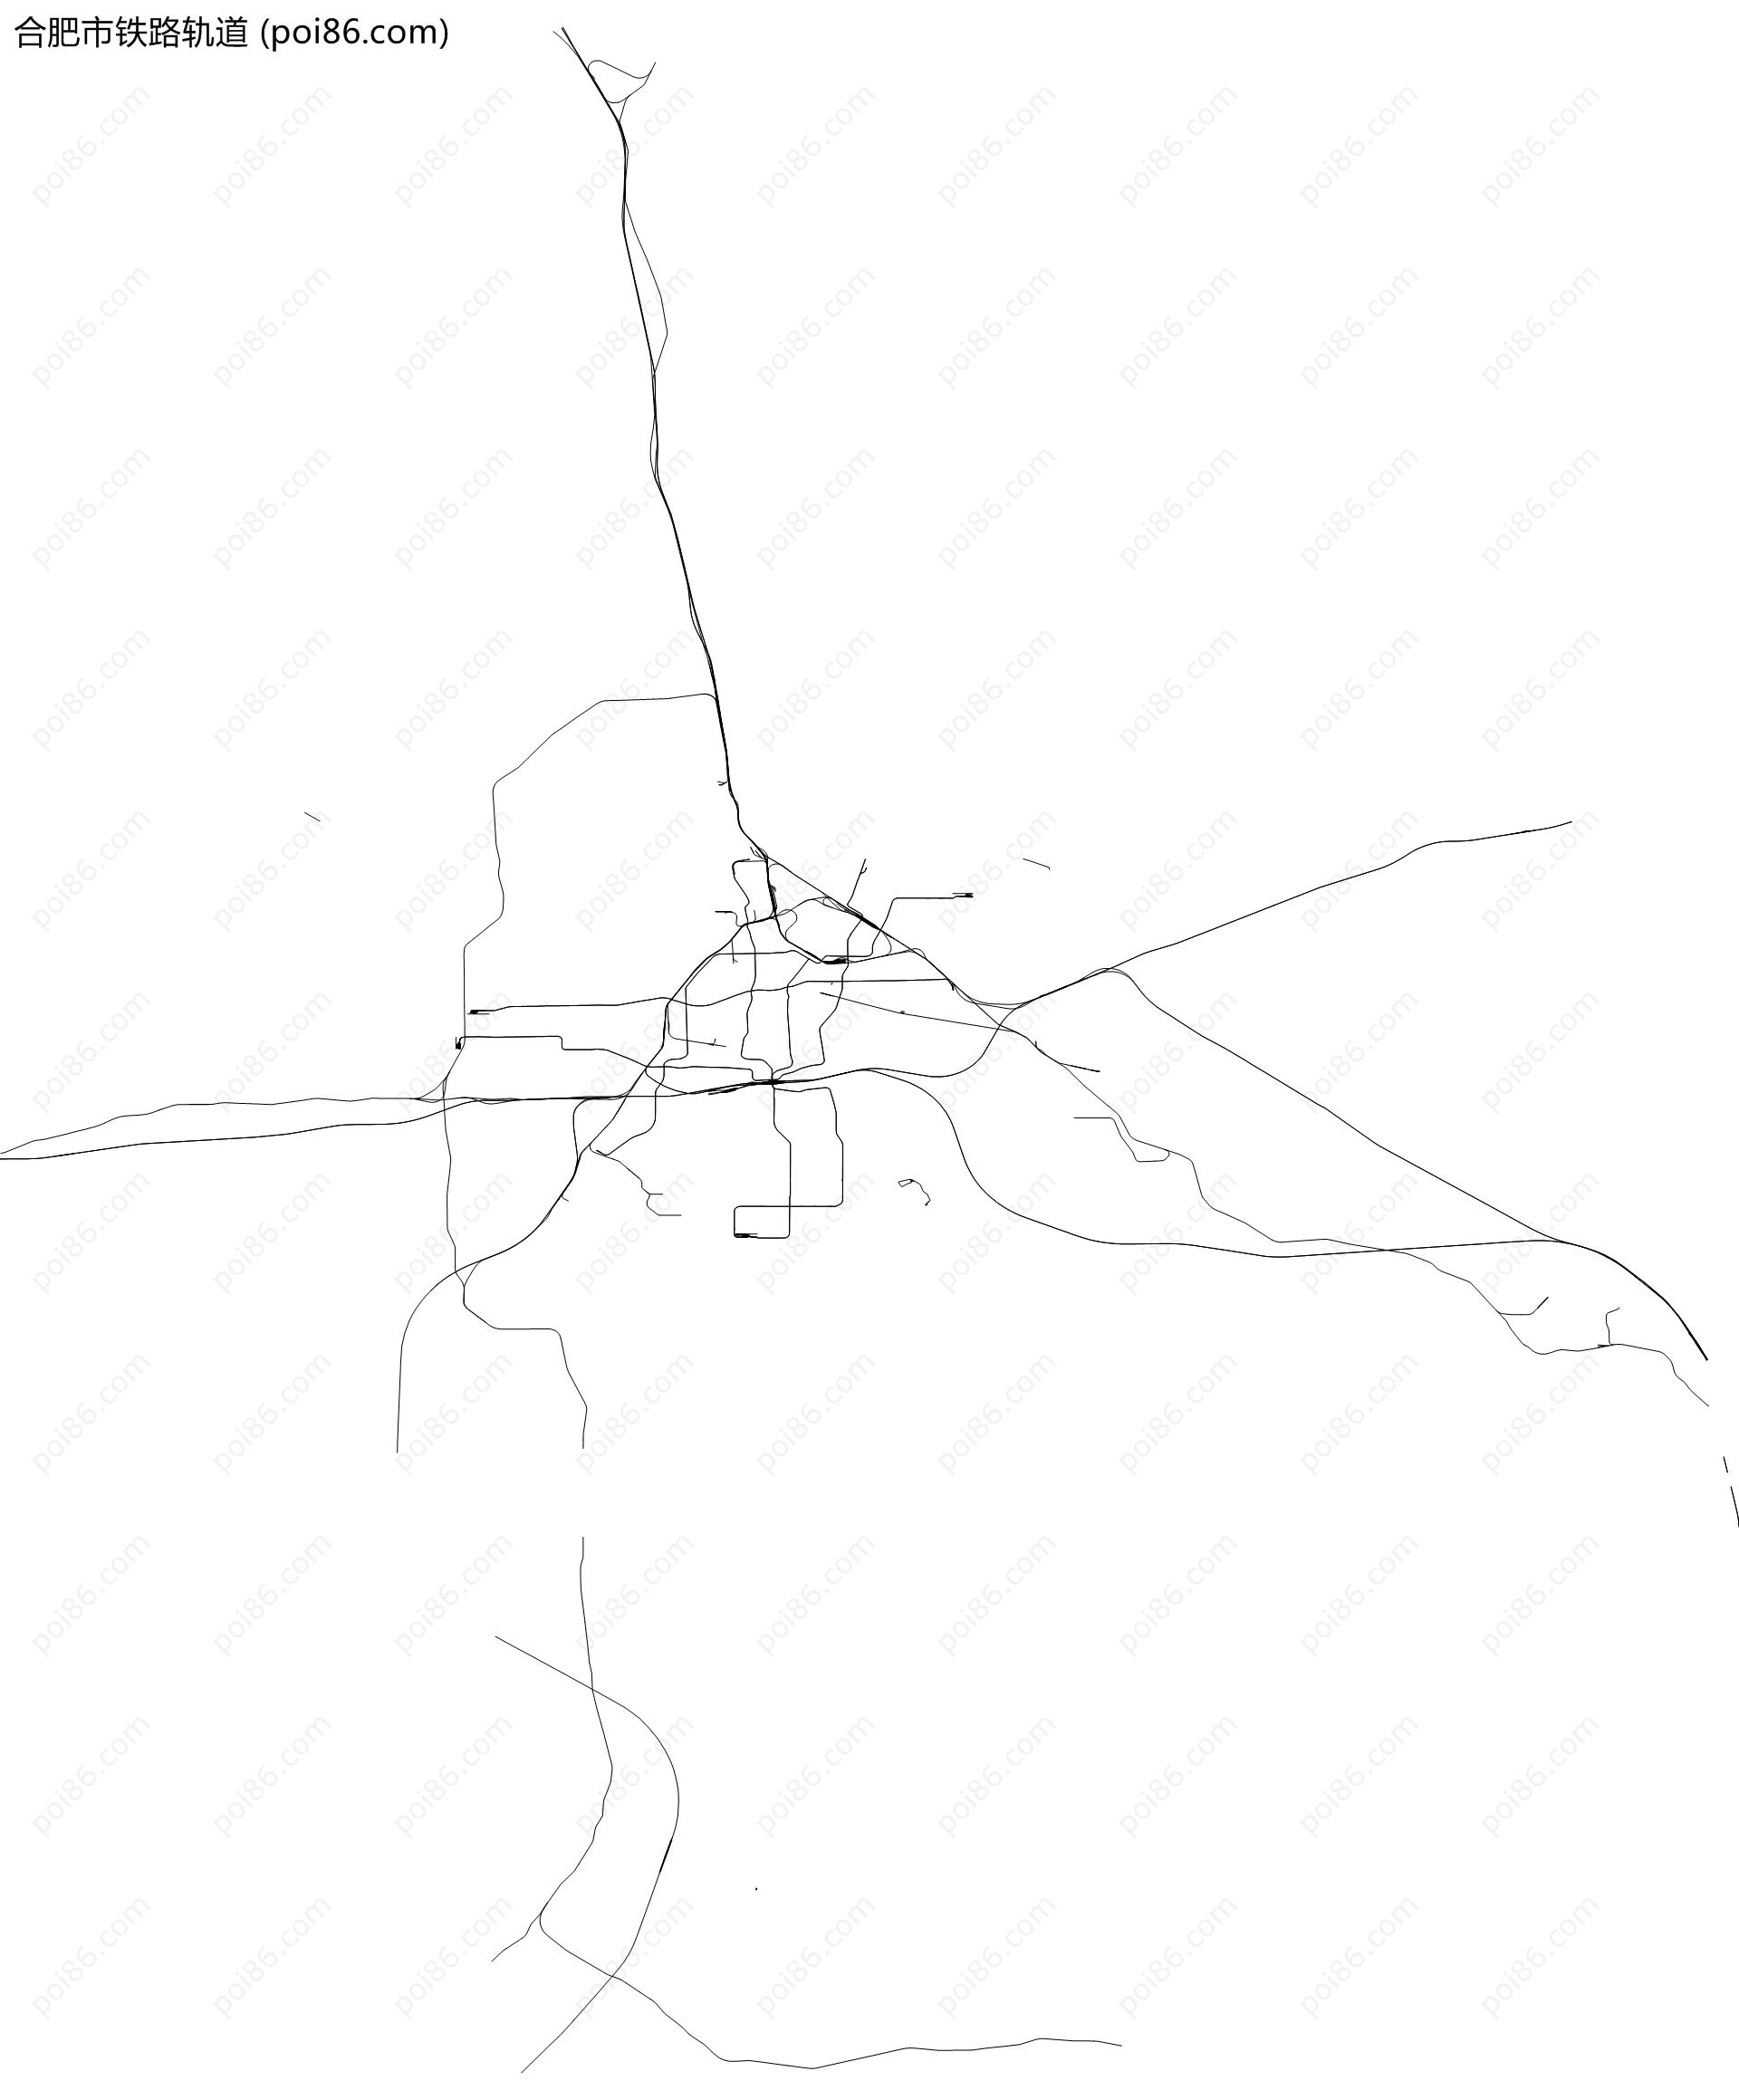 合肥市铁路轨道地图